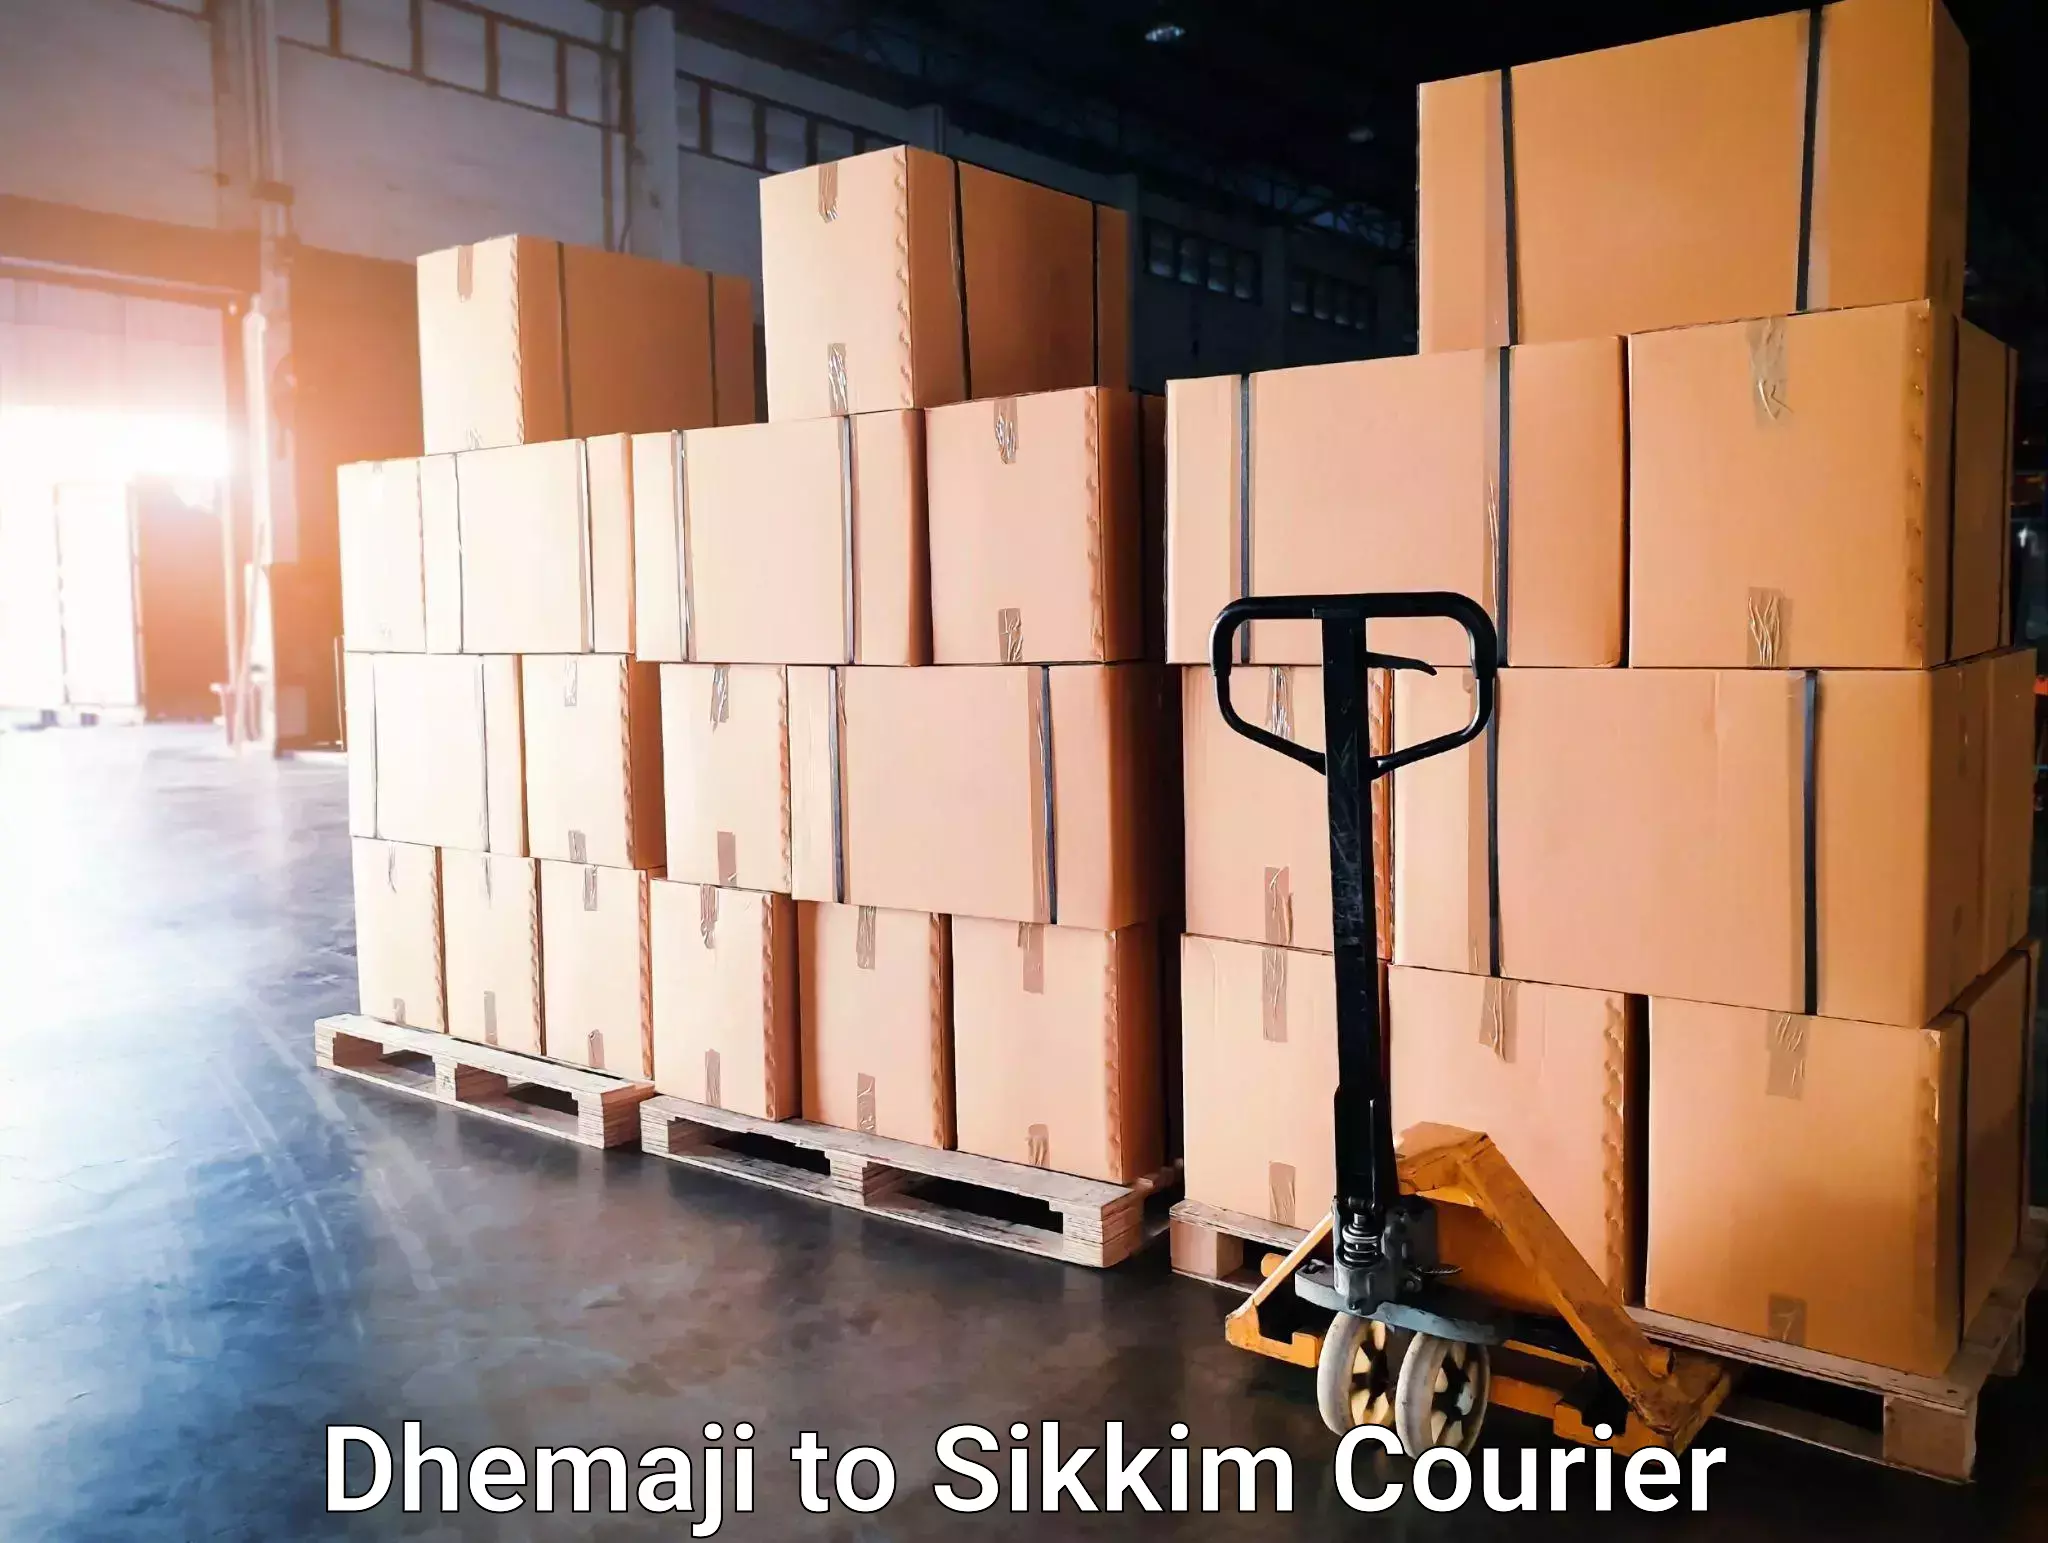 Nationwide shipping capabilities in Dhemaji to Gangtok